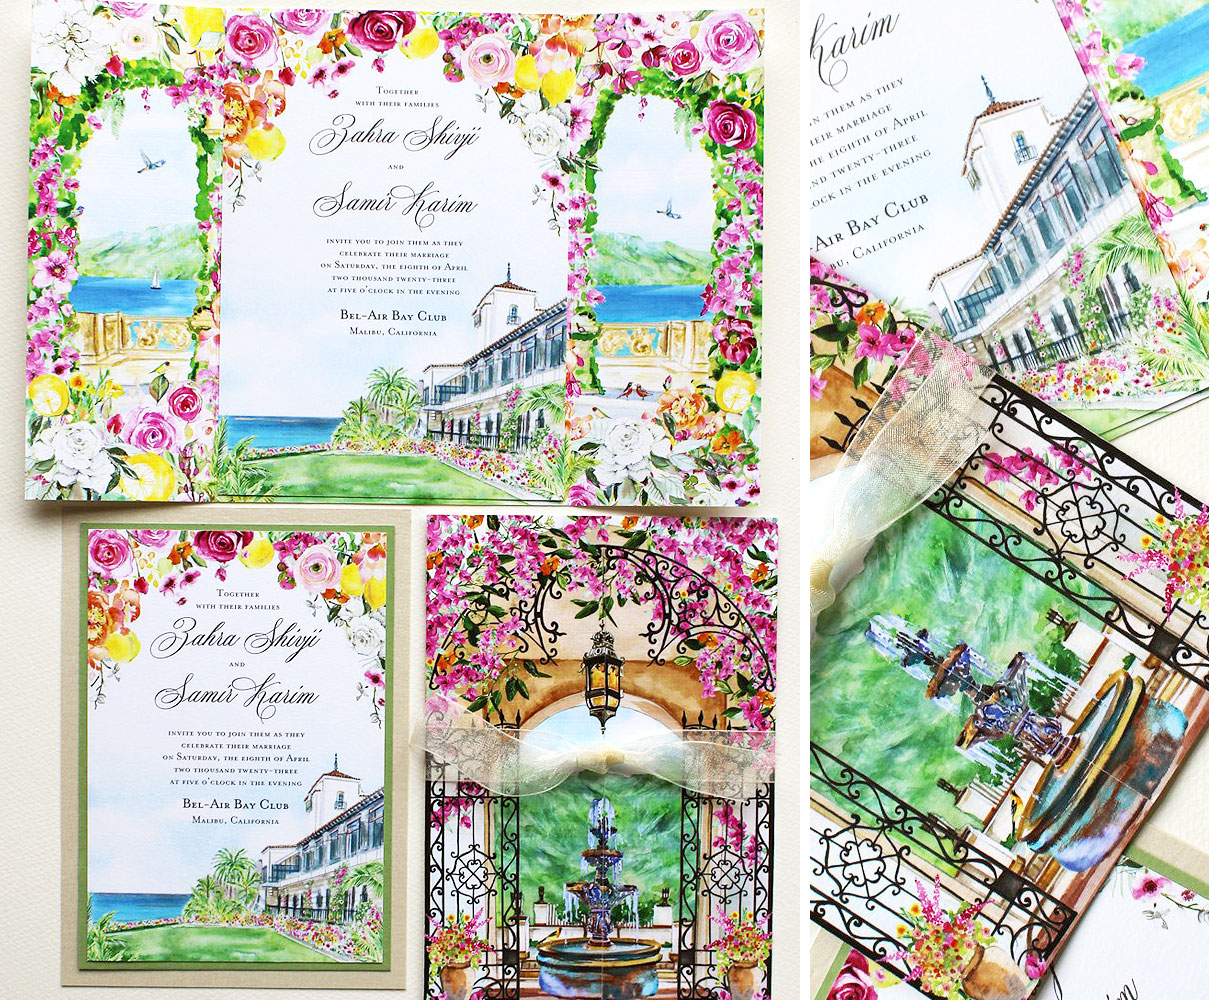 ornate-bel-air-bay-club-wedding-invitations